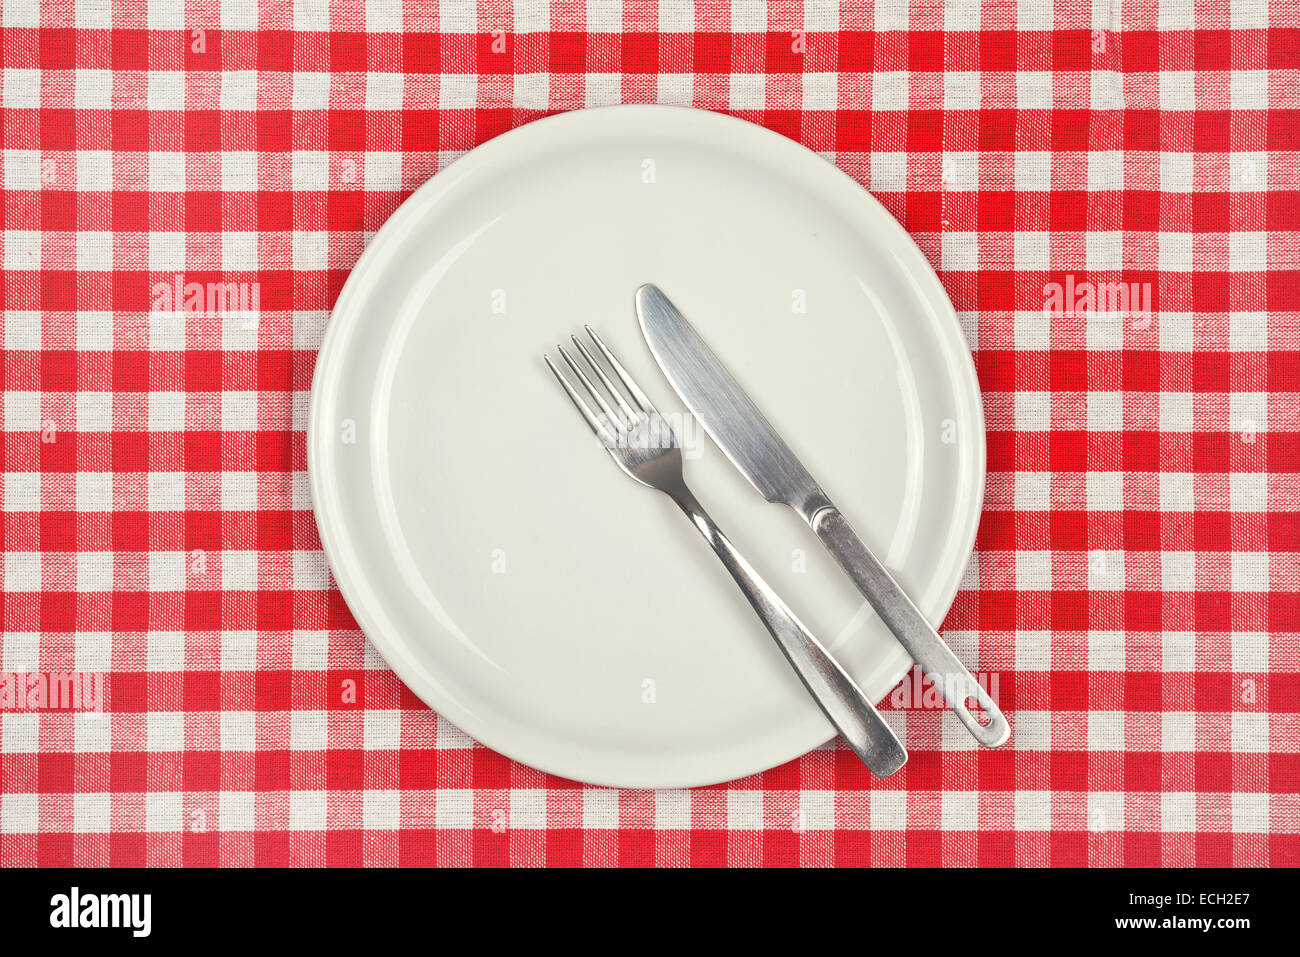 Placa de vacío en la mesa de restaurante con manteles a cuadros rojos y blancos Foto de stock